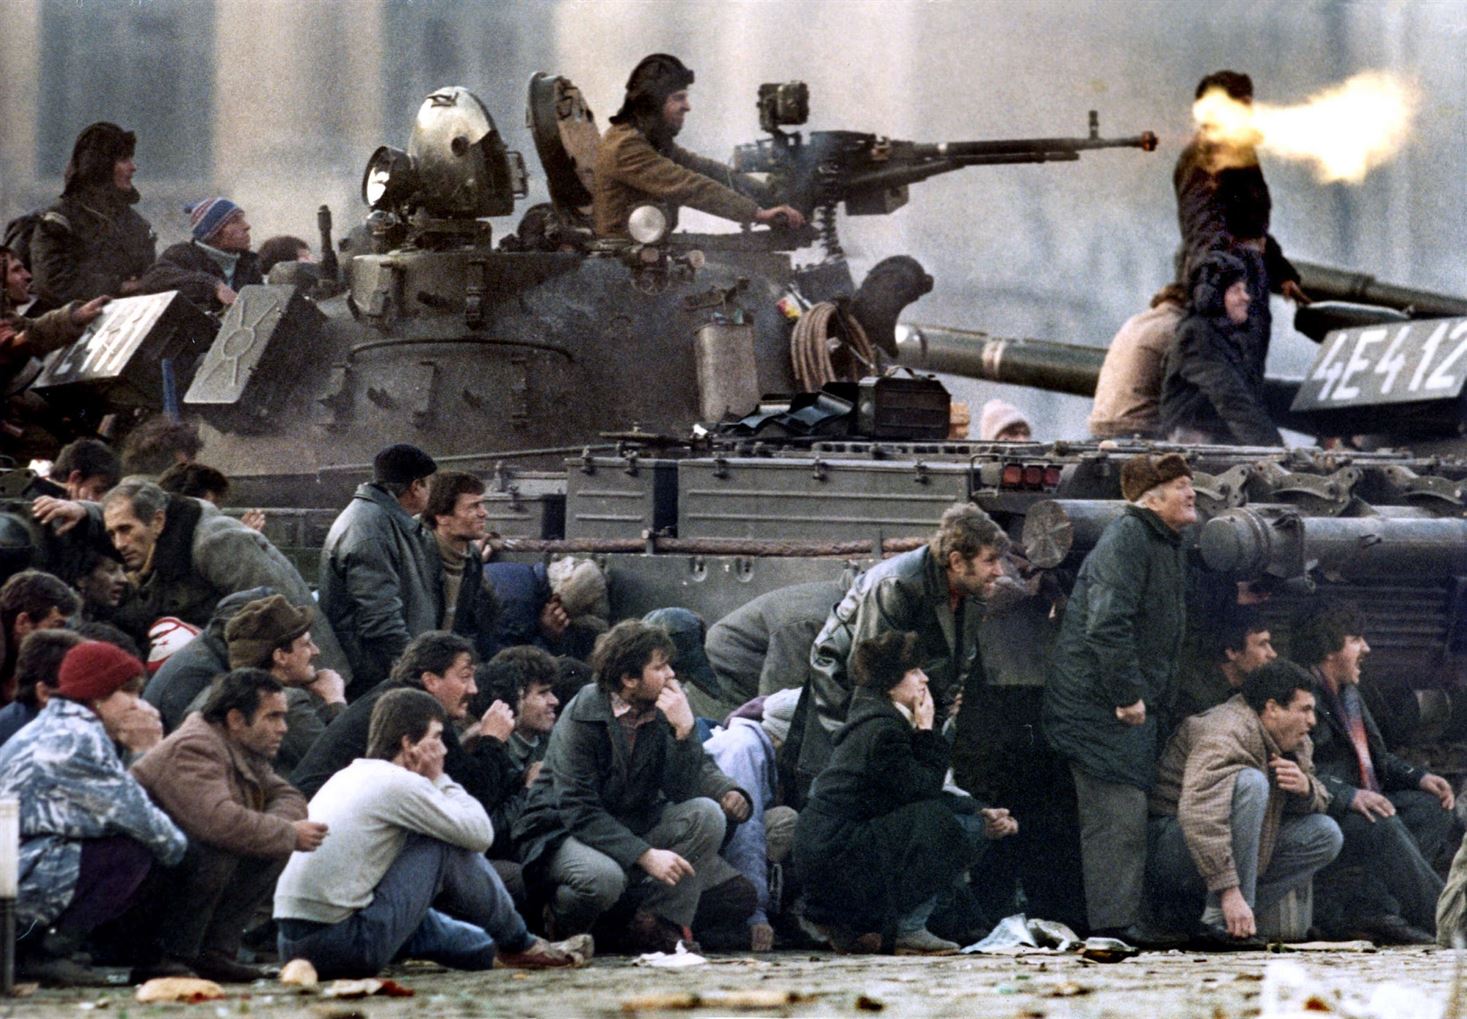 Присоединившийся к демонстрантам румынский танкист обстреливает позиции секуритате, Бухарест, Румыния, 22 декабря 1989 г.